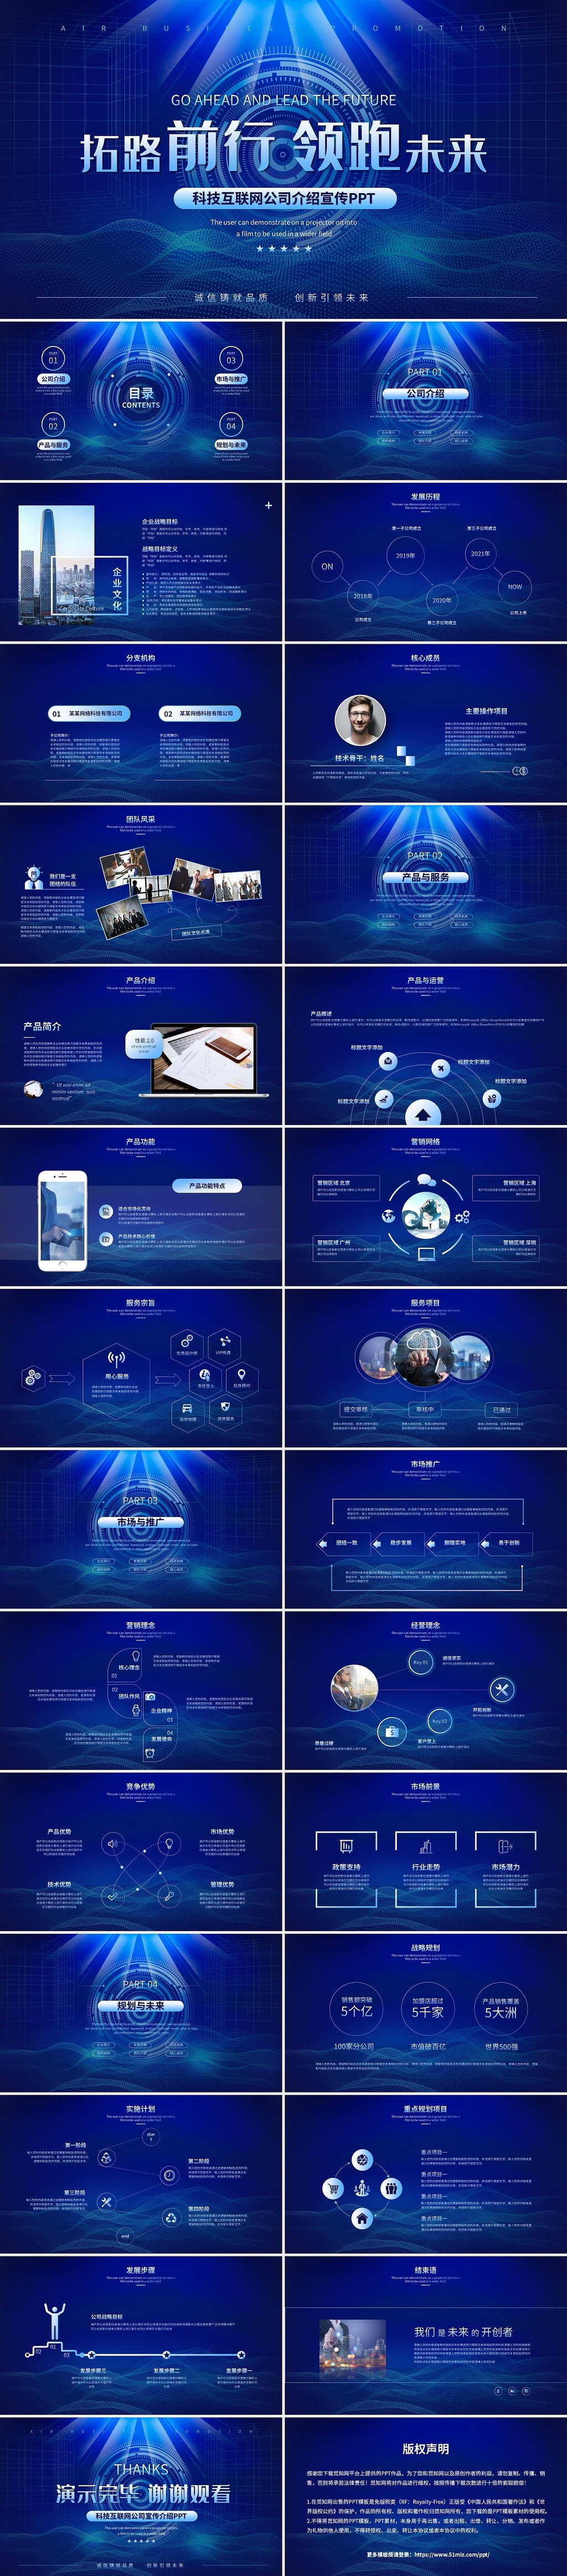 蓝色科技感企业公司介绍企业介绍公司宣传ppt模板